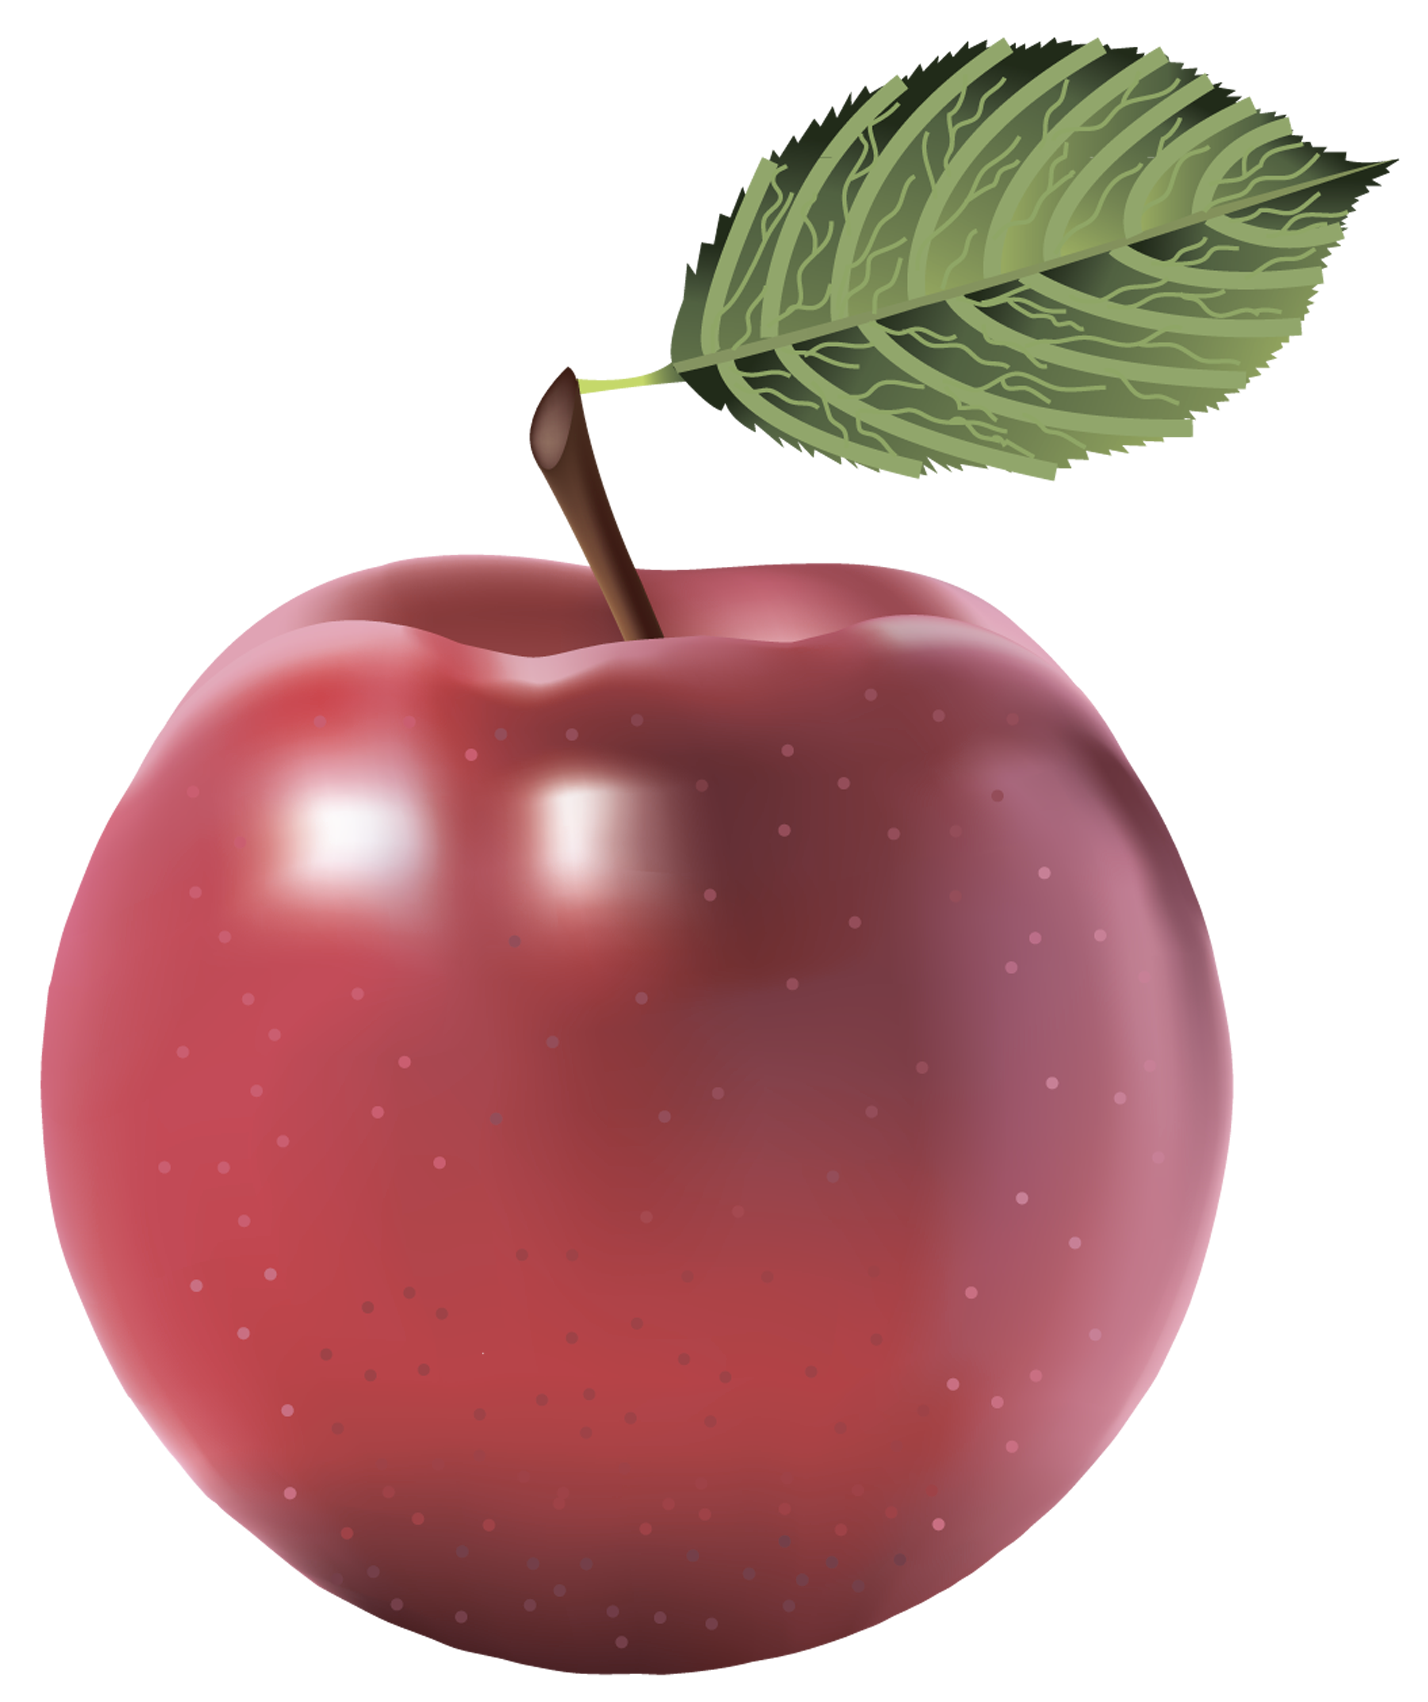 맛있는 빨간 사과